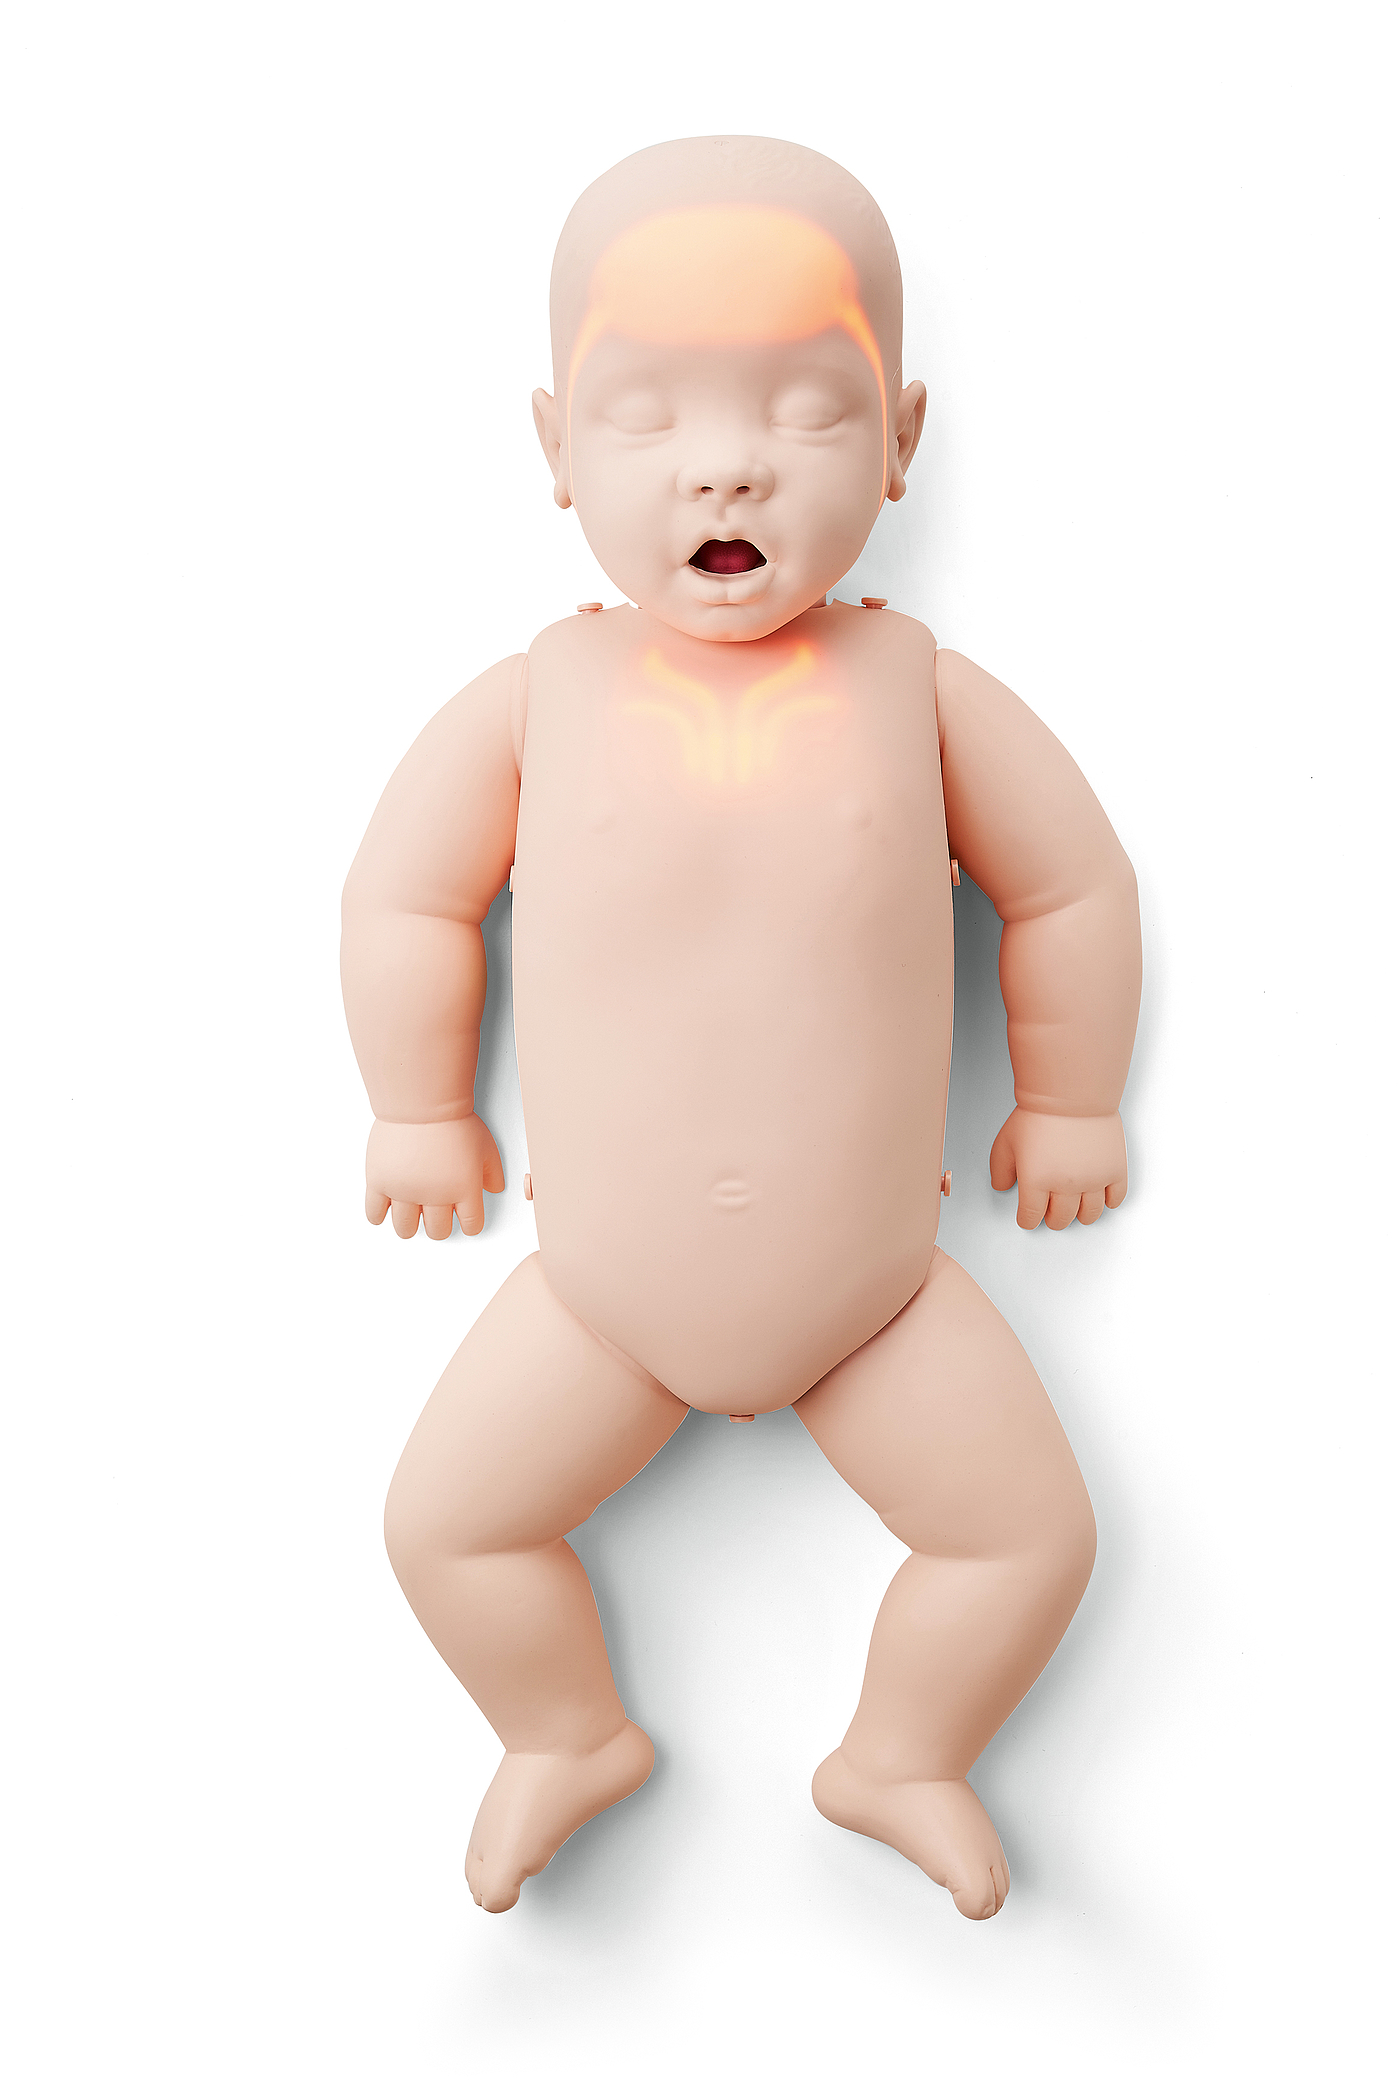 胎儿先天性大叶性肺气肿与肺囊腺瘤的鉴别-健康160